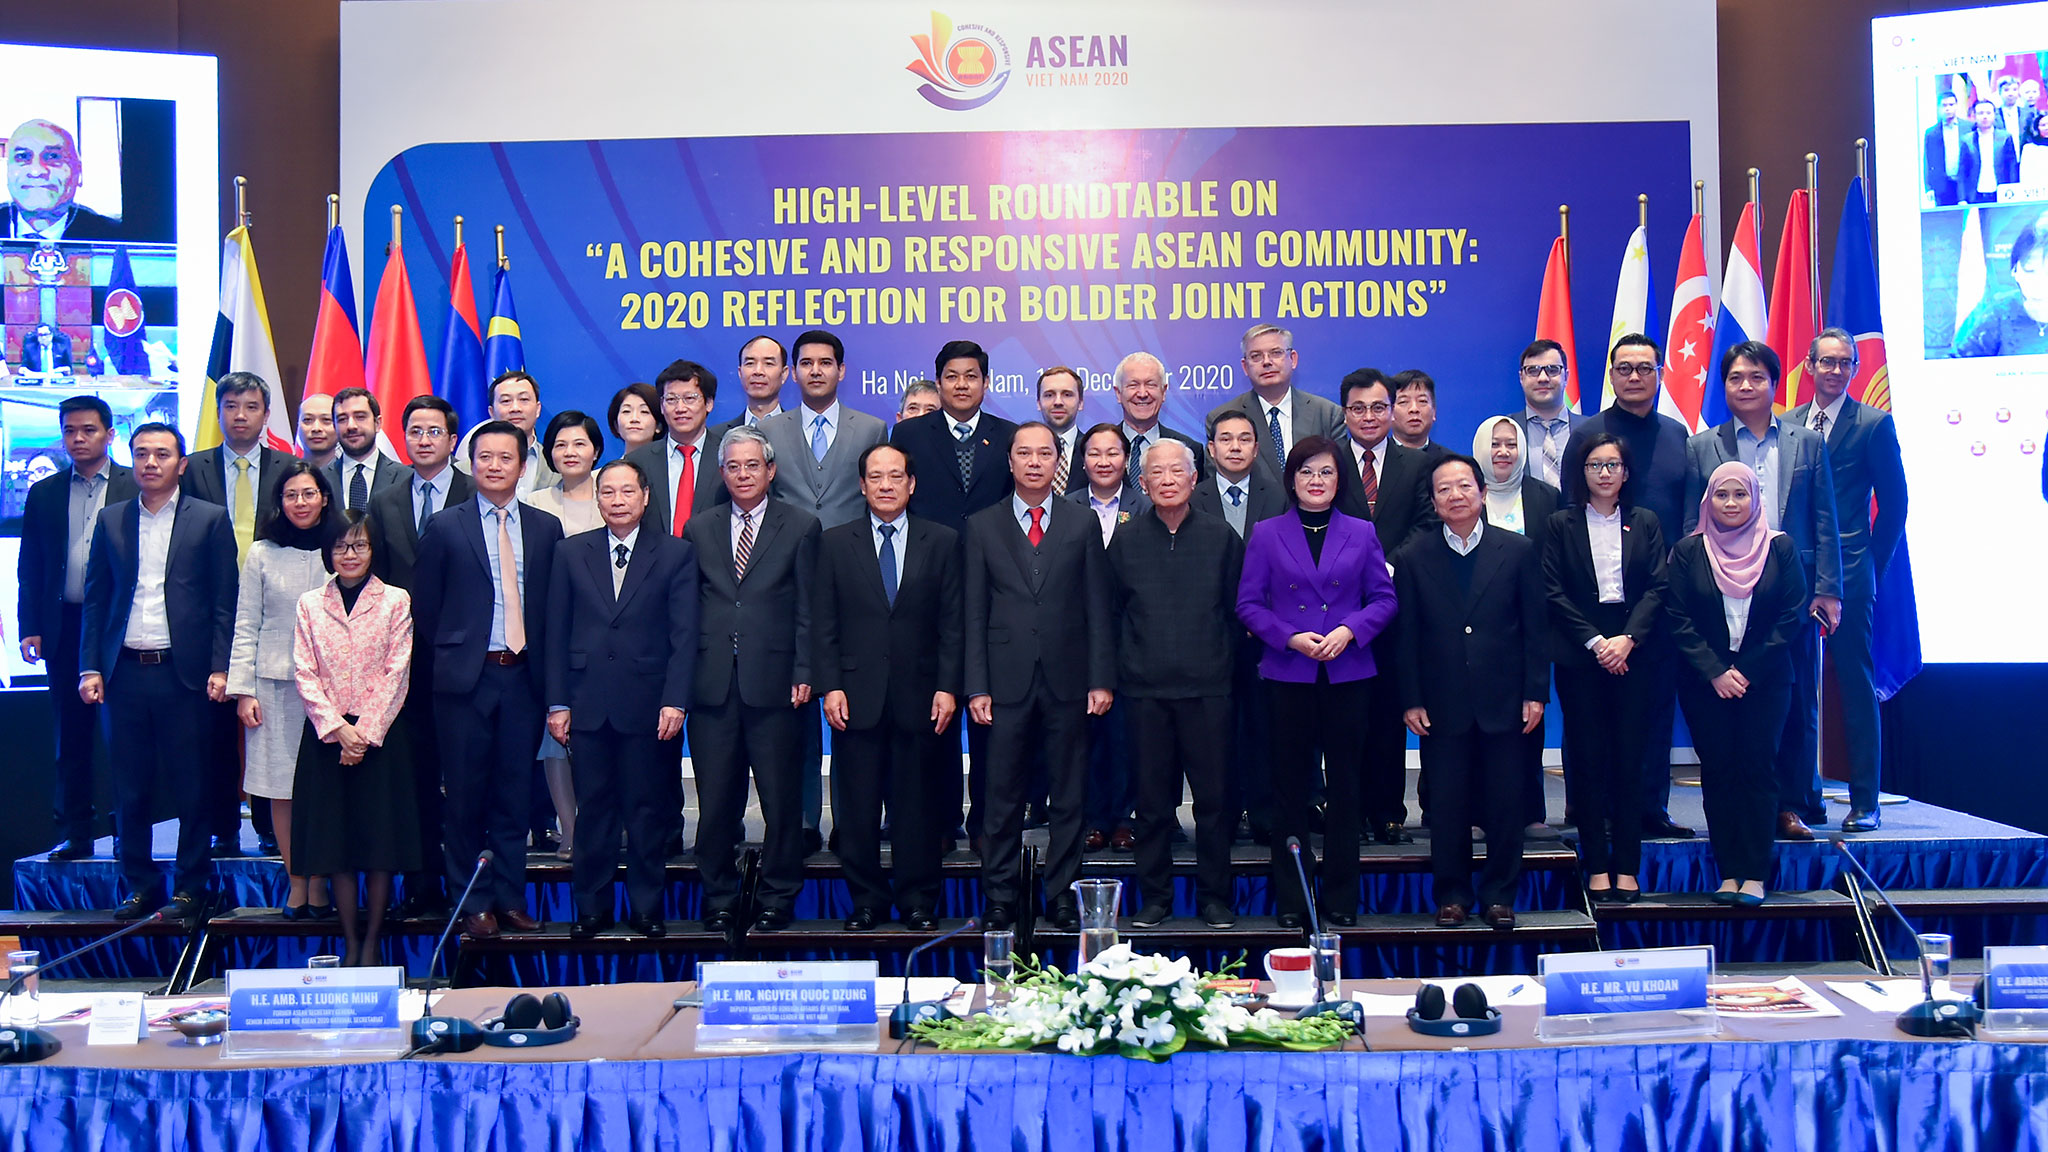 Dẫn dắt ASEAN: ASEAN đang dẫn dắt khu vực trong việc xây dựng một khu vực tự do thương mại khổng lồ và khả năng kiểm soát những thách thức an ninh phức tạp. Nhấn vào hình ảnh để khám phá những bước tiến hóa vượt bậc của ASEAN trong việc đốn hạ các rào cản phi thương mại và đẩy mạnh hợp tác chính trị và xã hội trong khu vực.